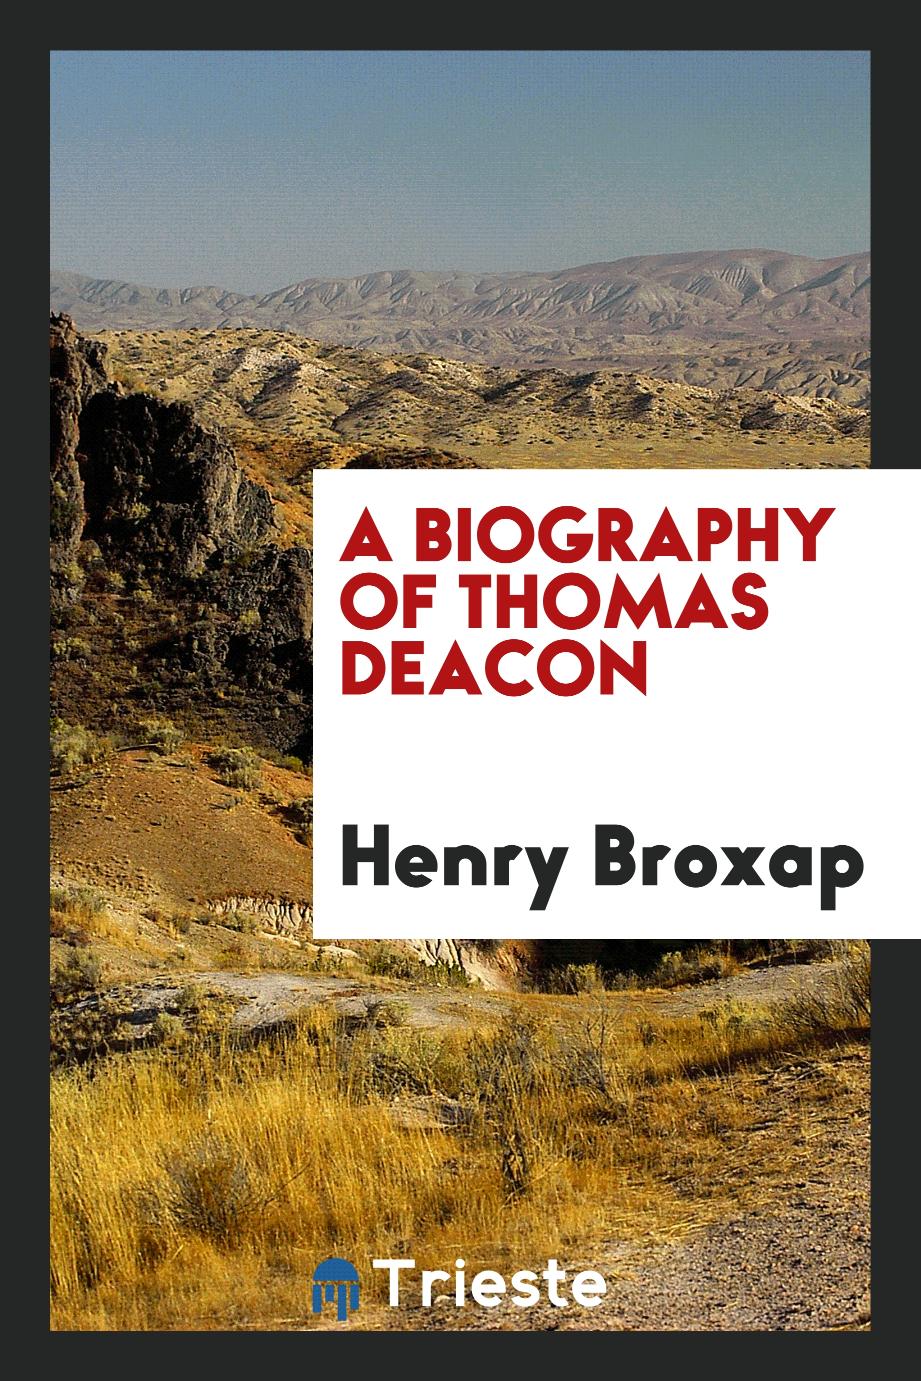 A biography of Thomas Deacon